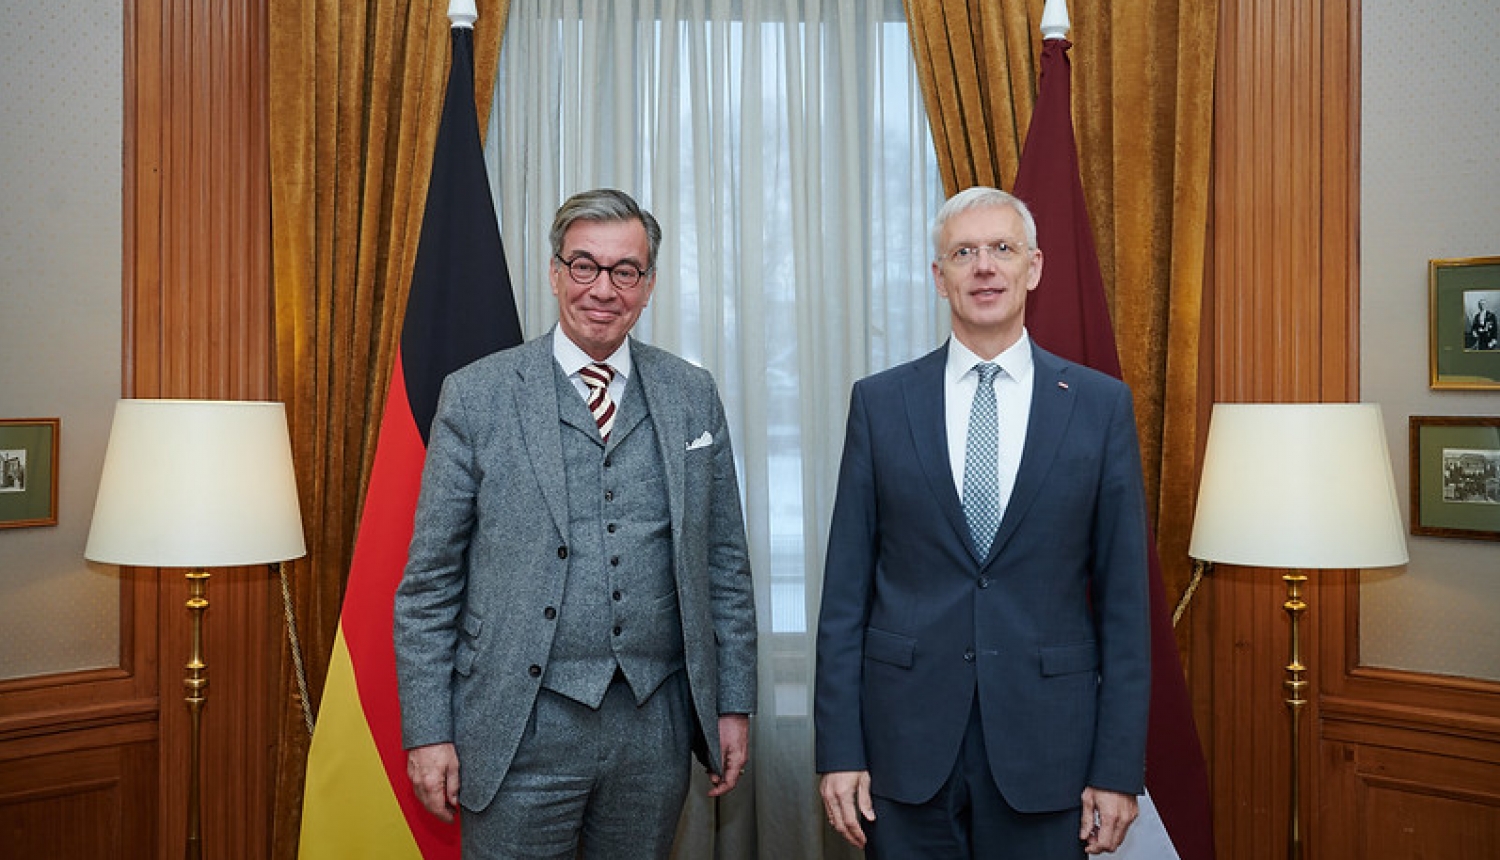 Ārlietu ministrs Krišjānis Kariņš tiekas ar Vācijas vēstnieku Latvijā Kristiānu Heltu (Christian Heldt)